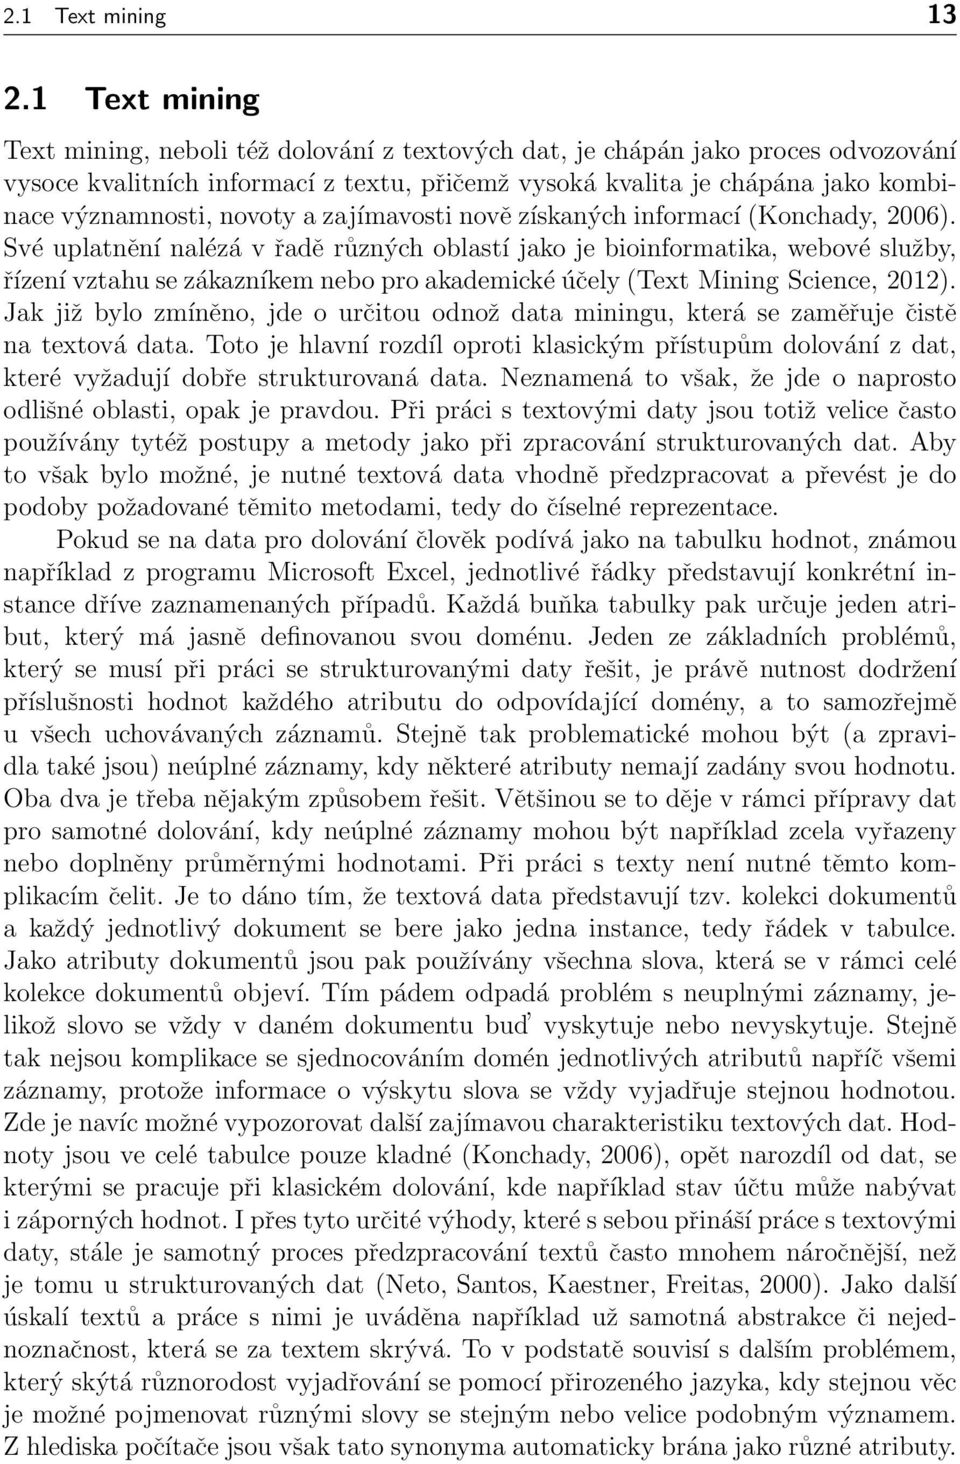 novoty a zajímavosti nově získaných informací (Konchady, 2006).